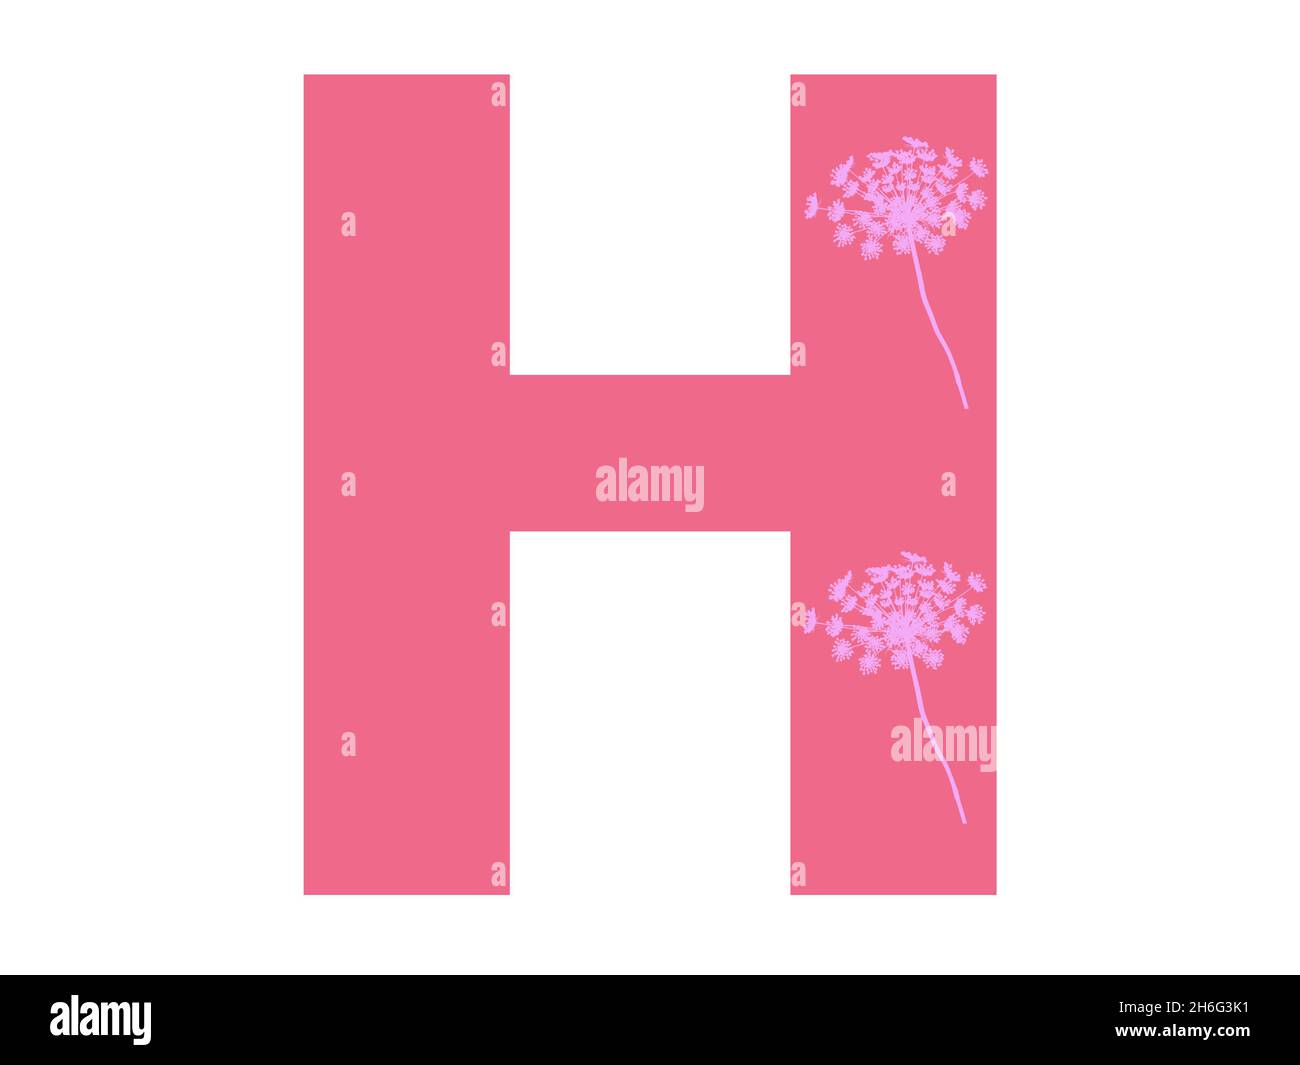 Lettera H dell'alfabeto realizzata con una silhouette di fiori rosa su sfondo rosa scuro, la lettera è isolata su sfondo bianco Foto Stock